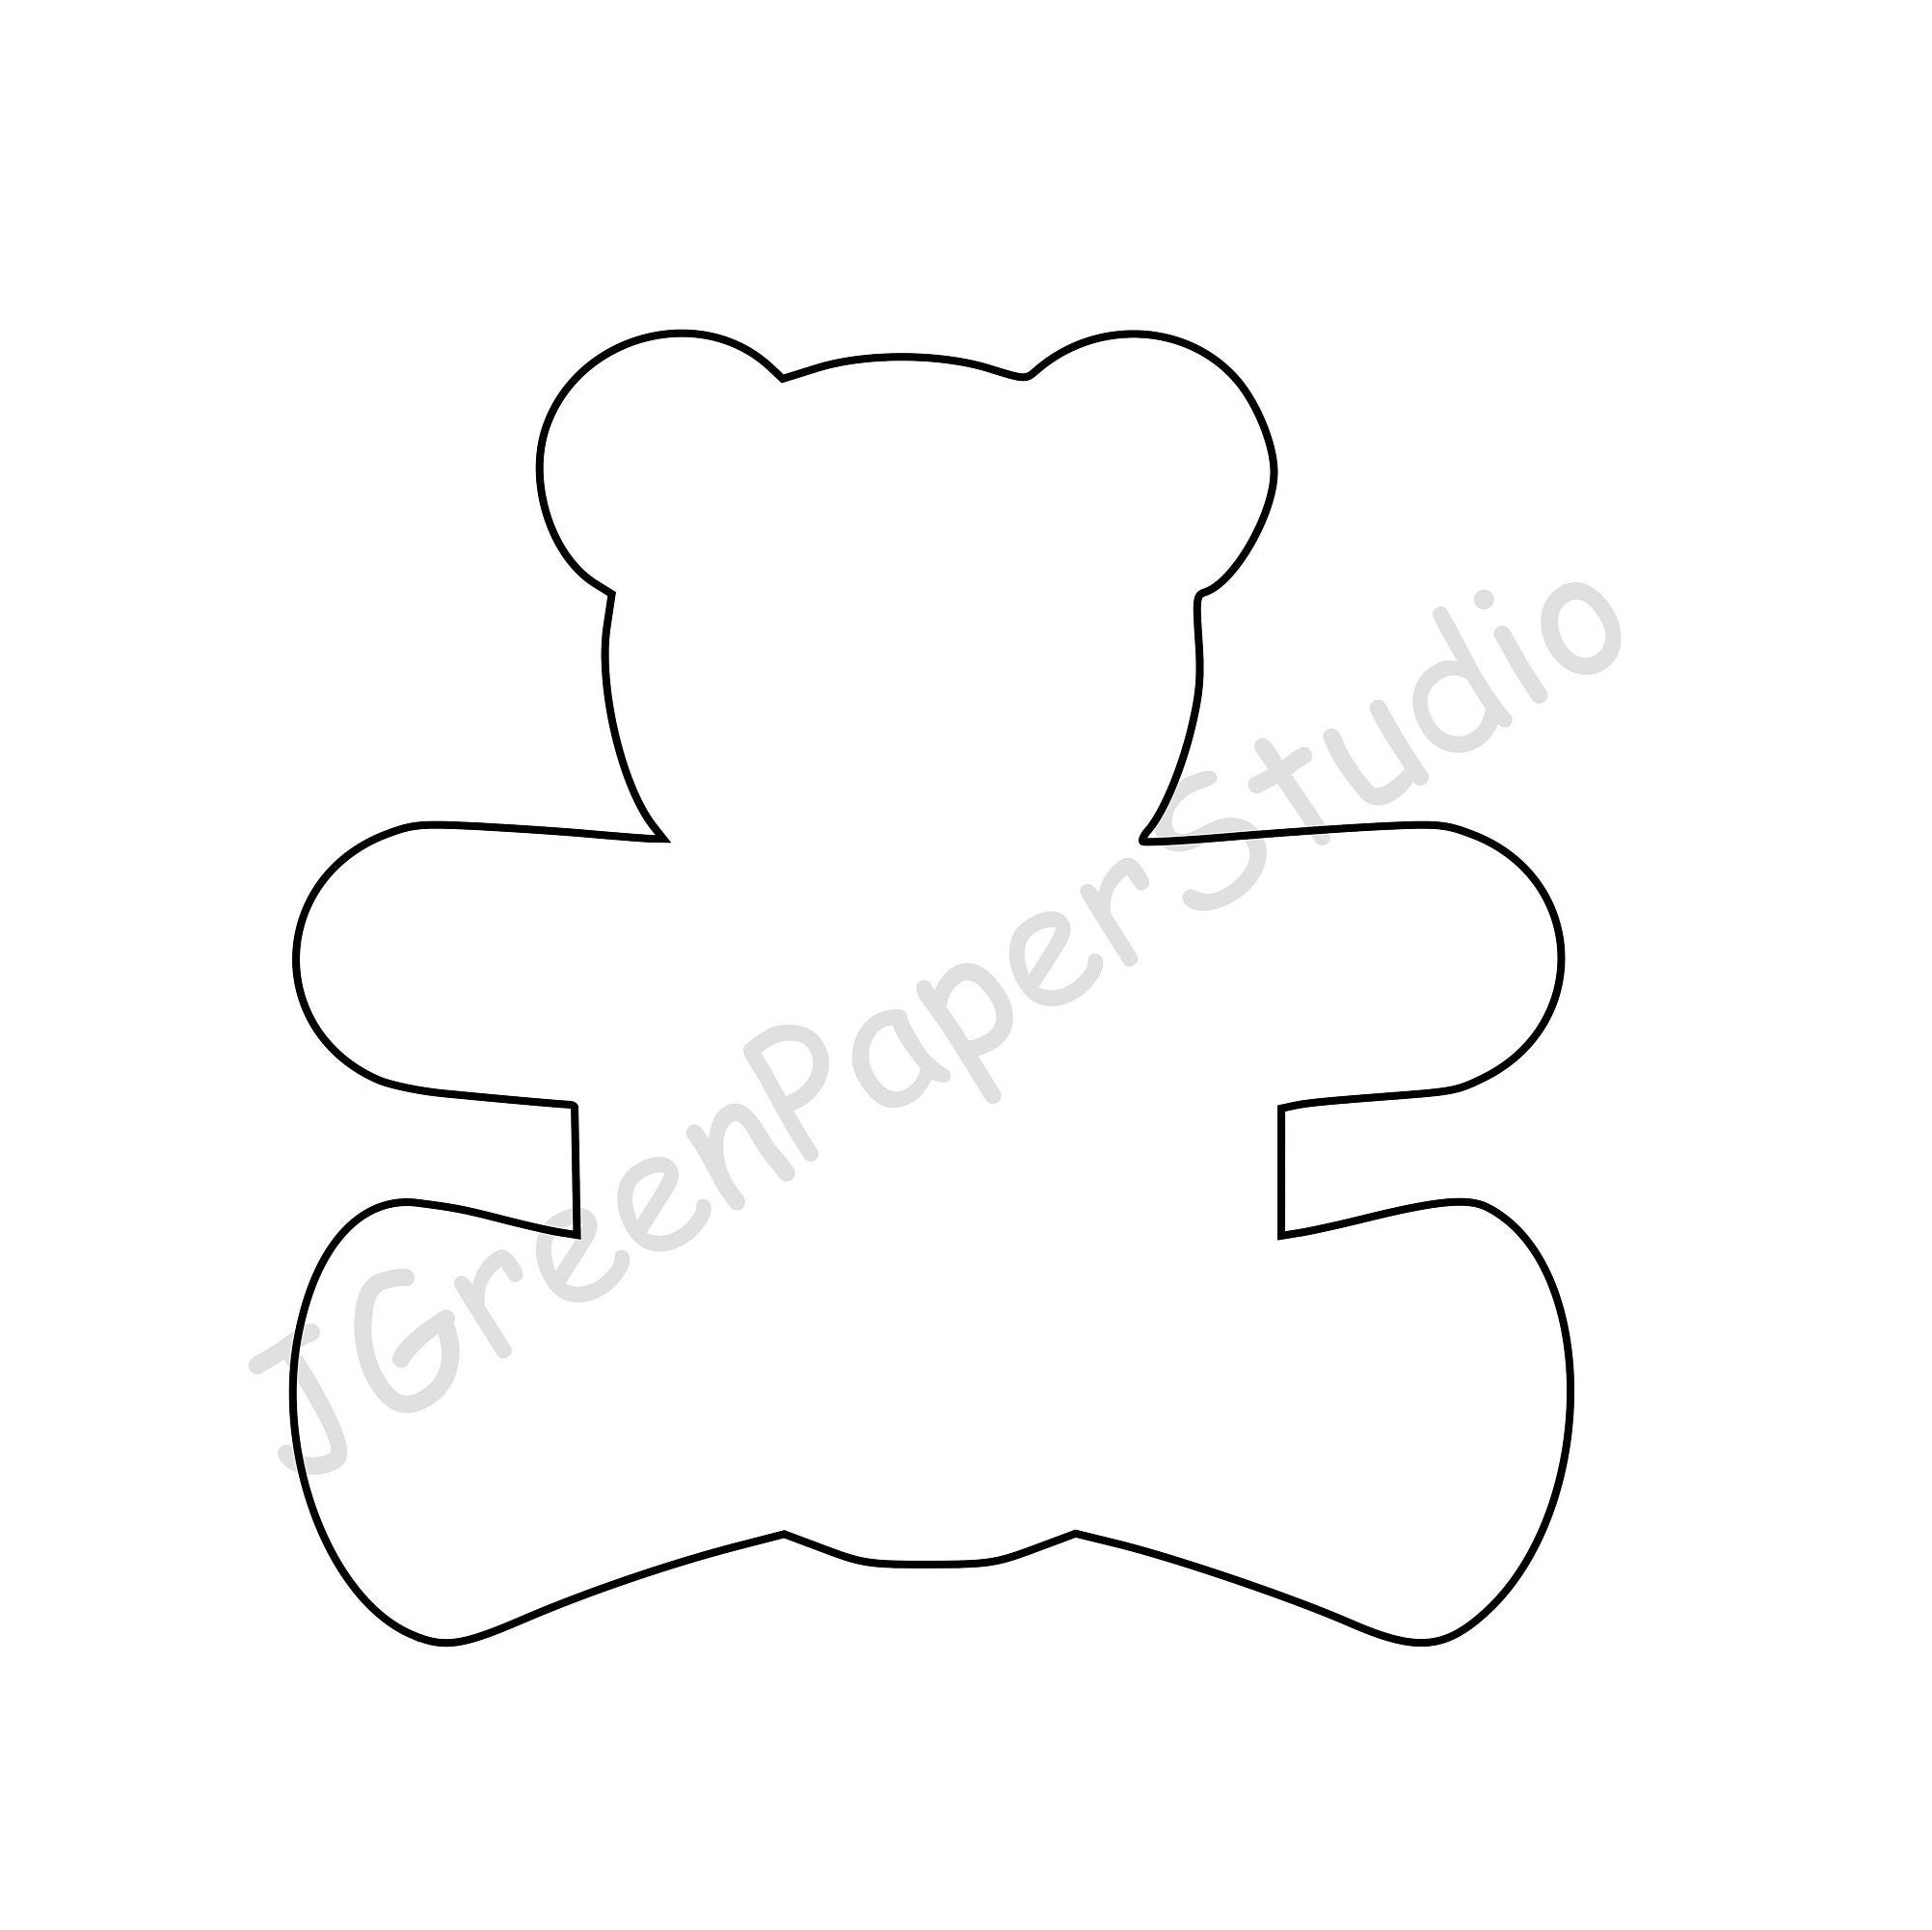 printable-teddy-bear-template-pdf-digital-download-teddy-kids-etsy-norway